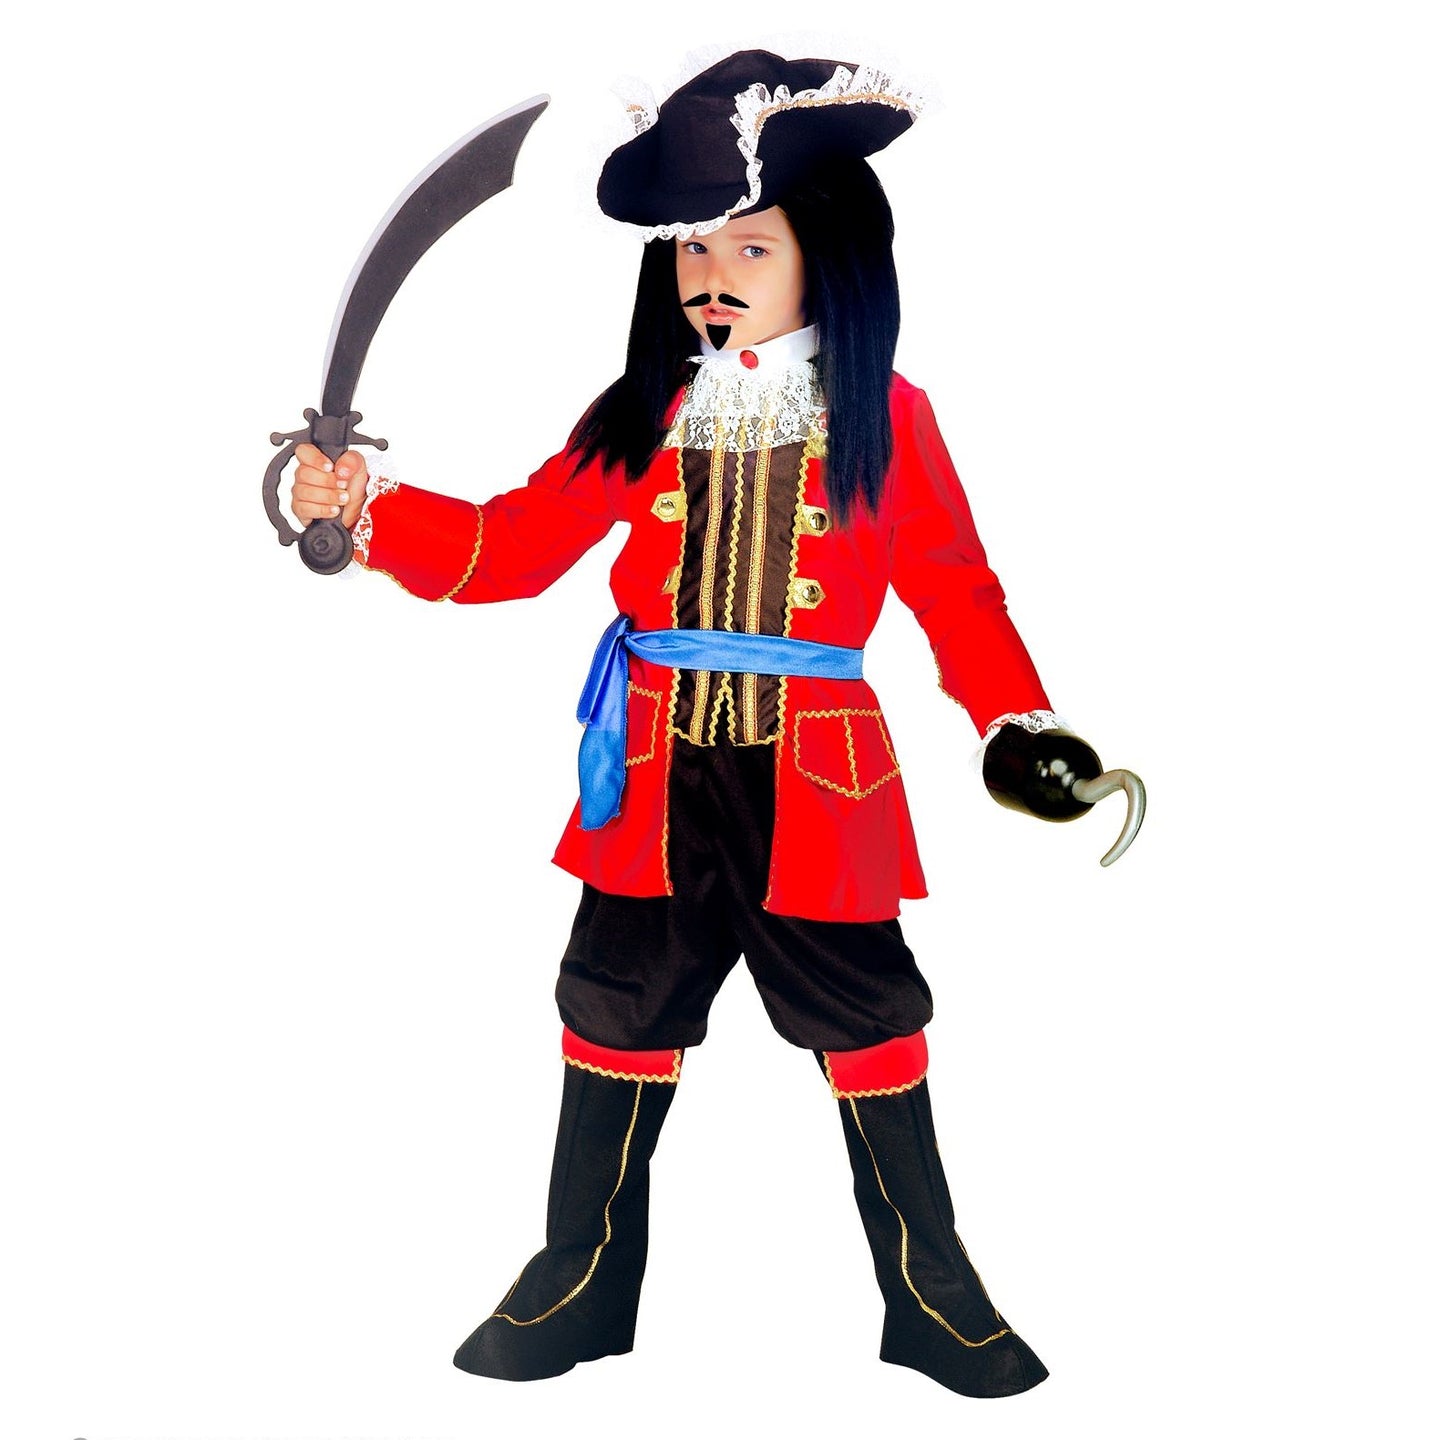 Pirate Captain costume